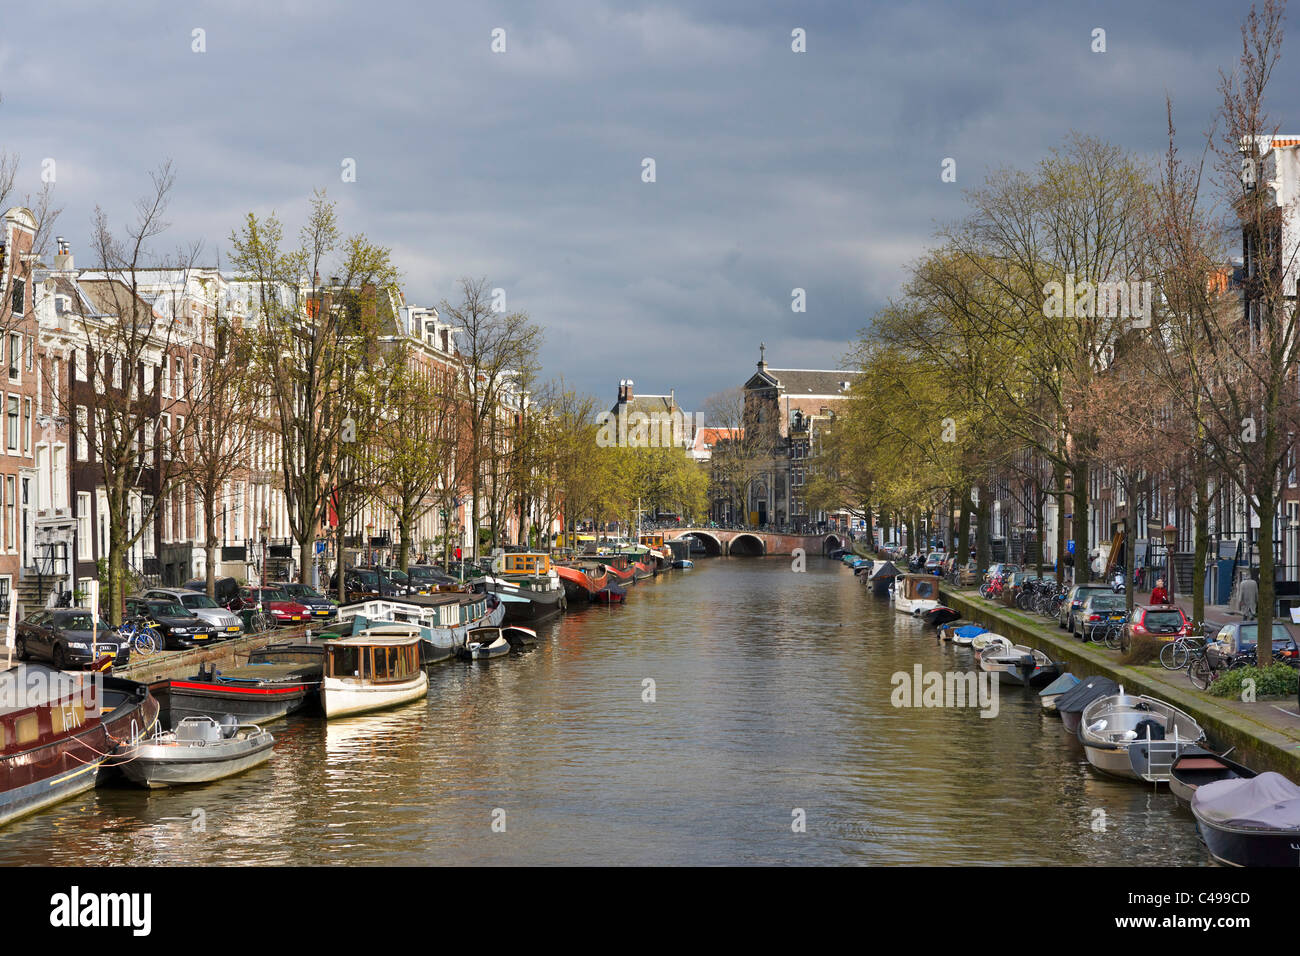 Maisons et bateaux sur un canal au début du printemps et la fin de l'hiver, Prinsengracht, Grachtengordel sud, Amsterdam, Pays-Bas Banque D'Images